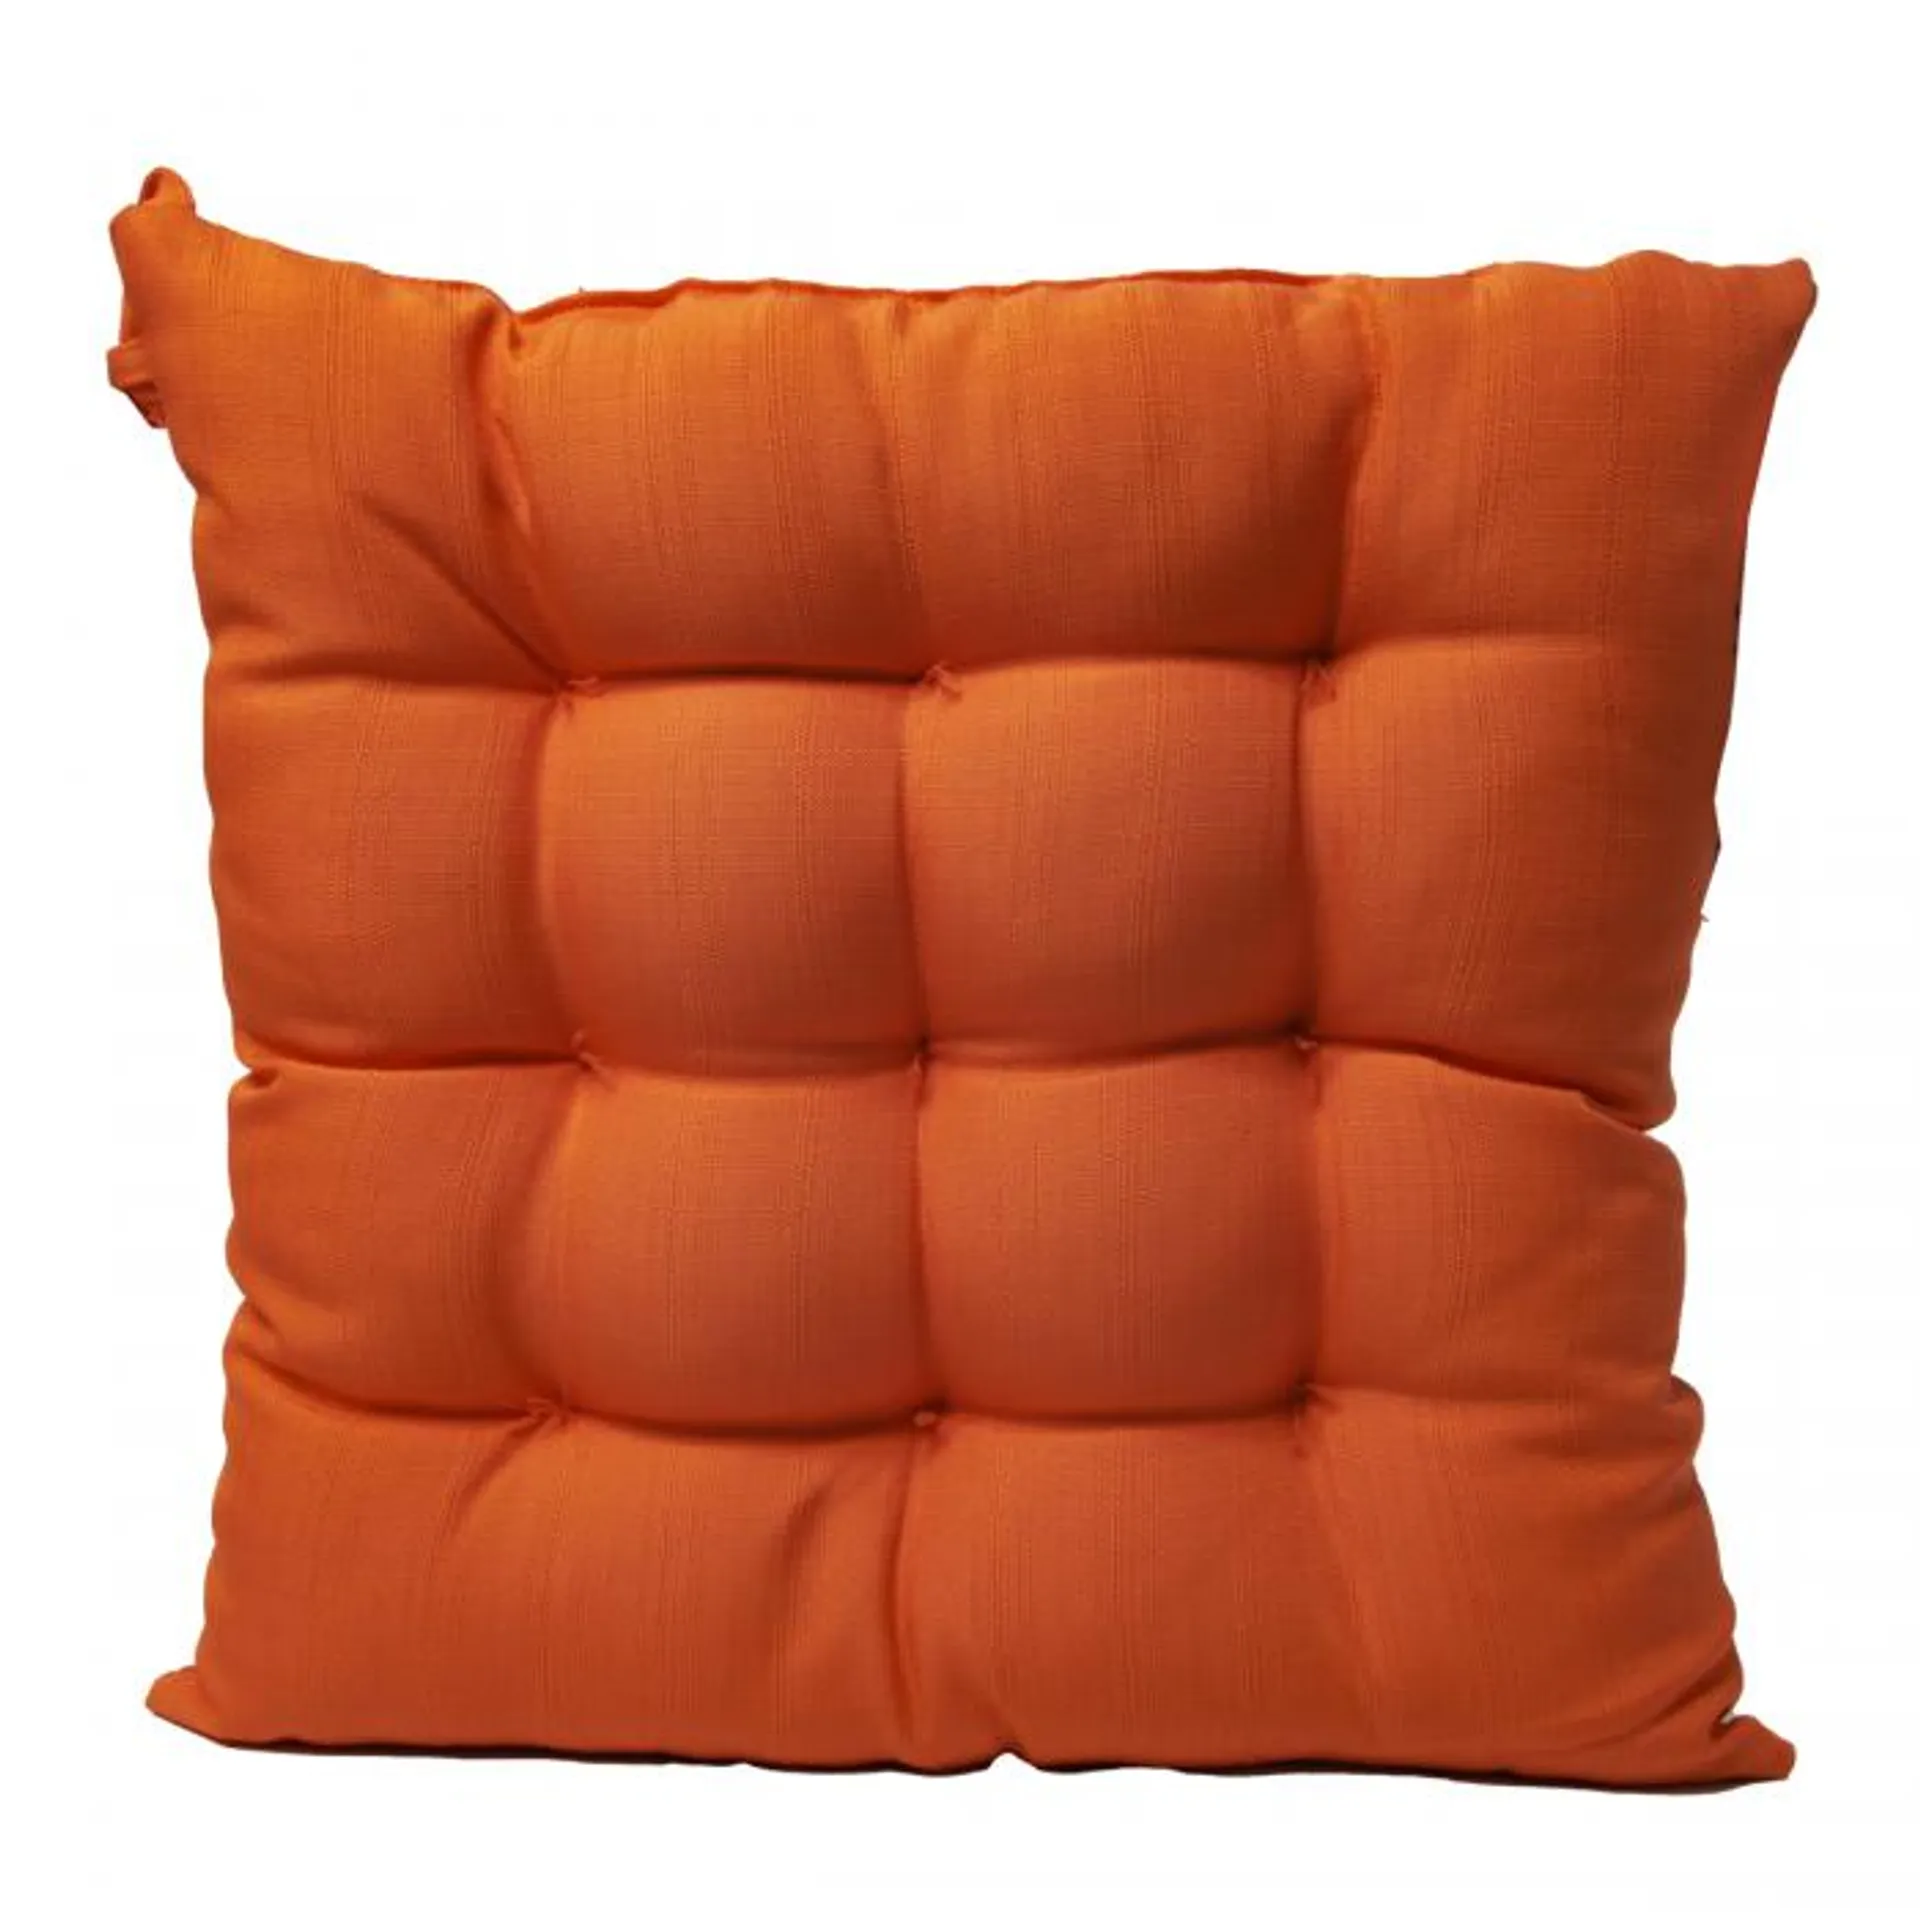 Orange Water Resistant Square Seat Pad - 40cm